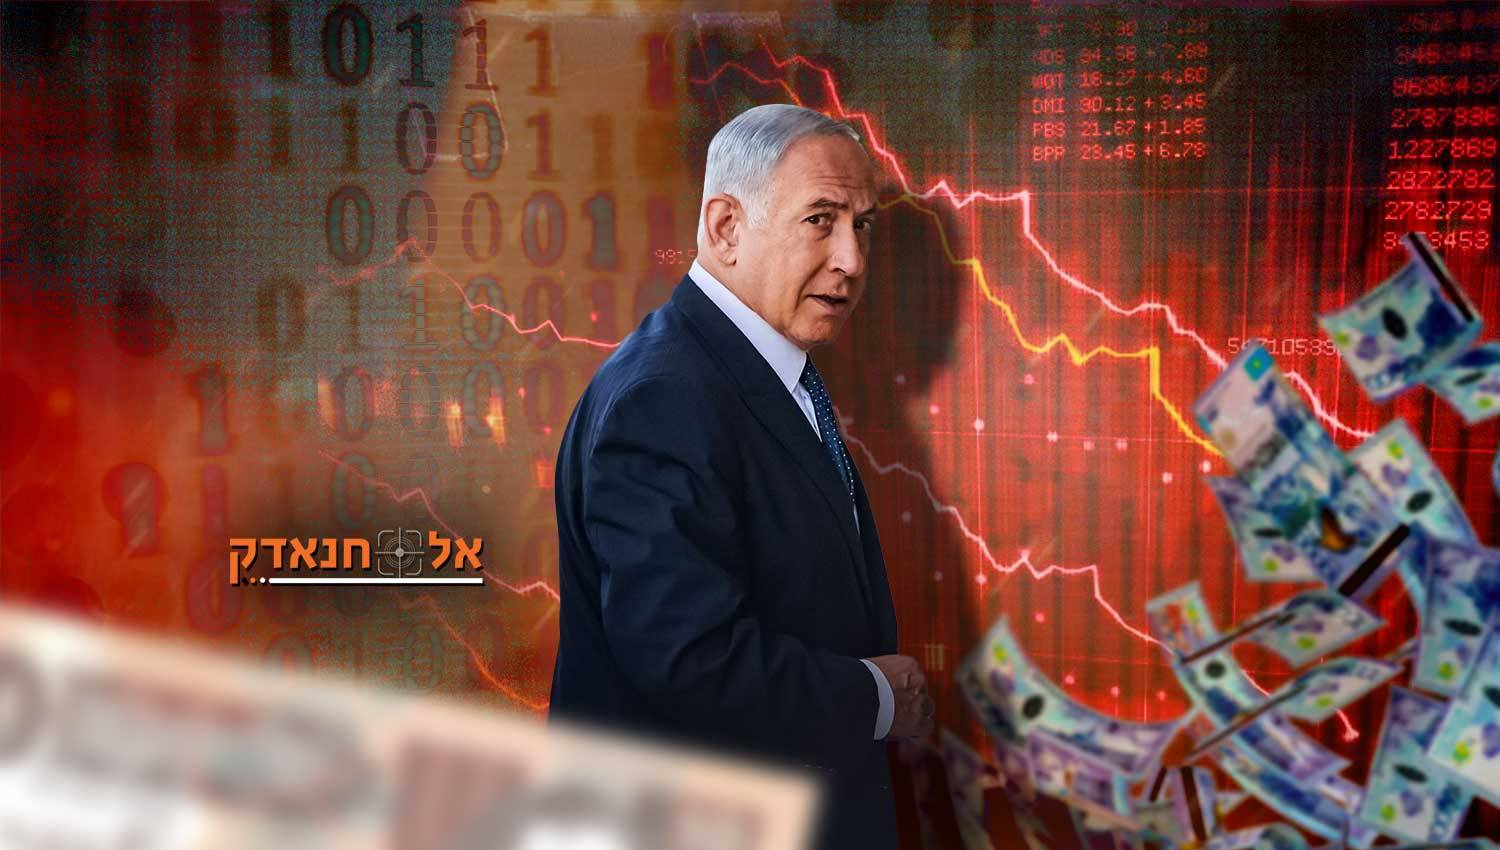 הפסדים של 400 מיליארד דולר לישראל עקב המלחמה